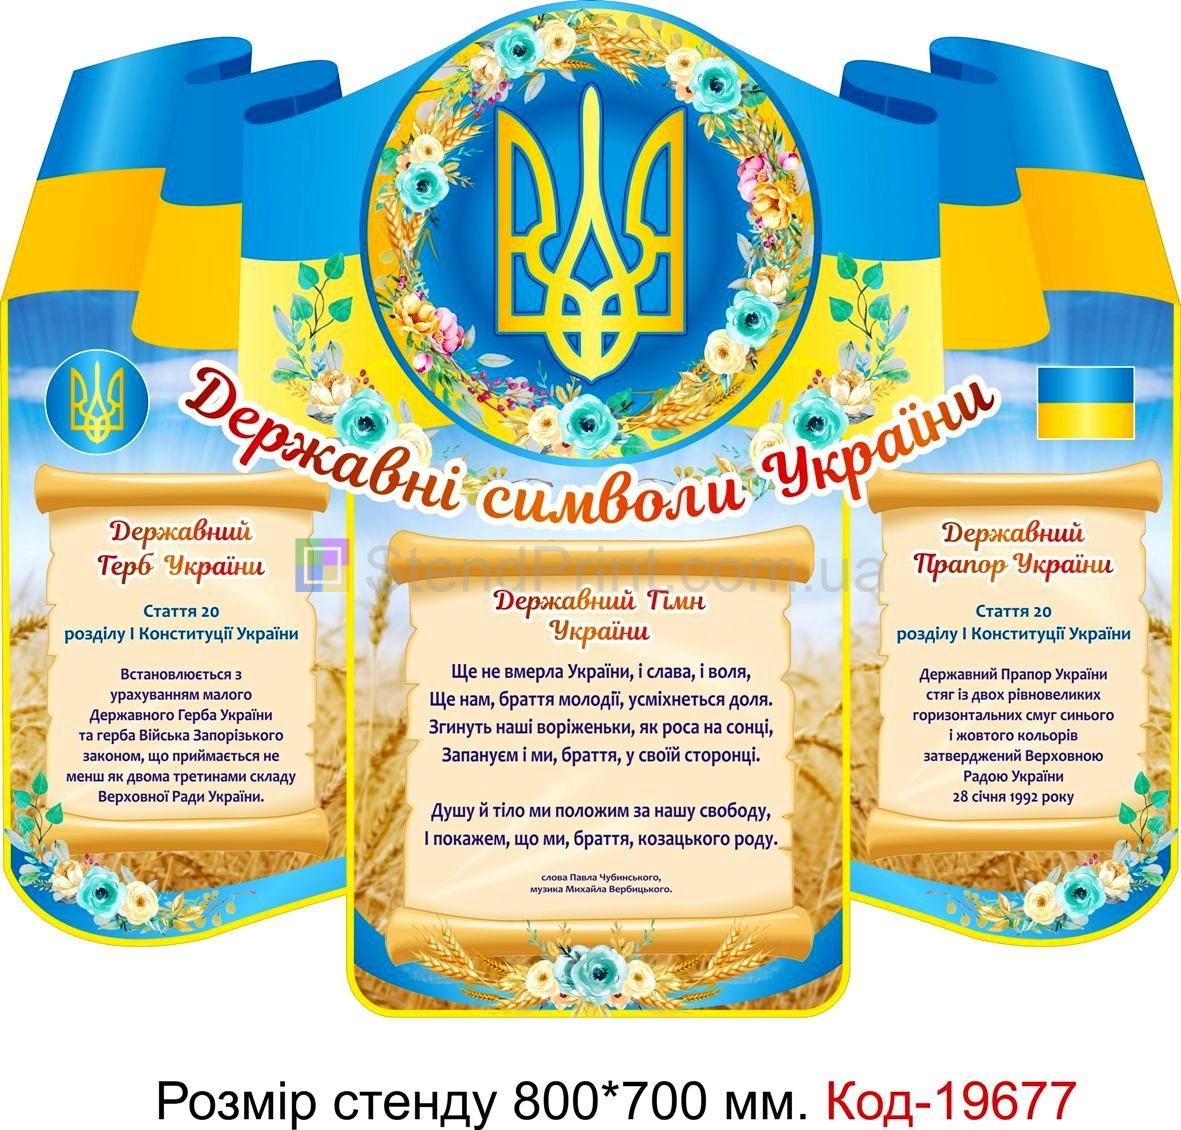 Код-19677 Державна символіка України стенди для оформлення школи класу та днз